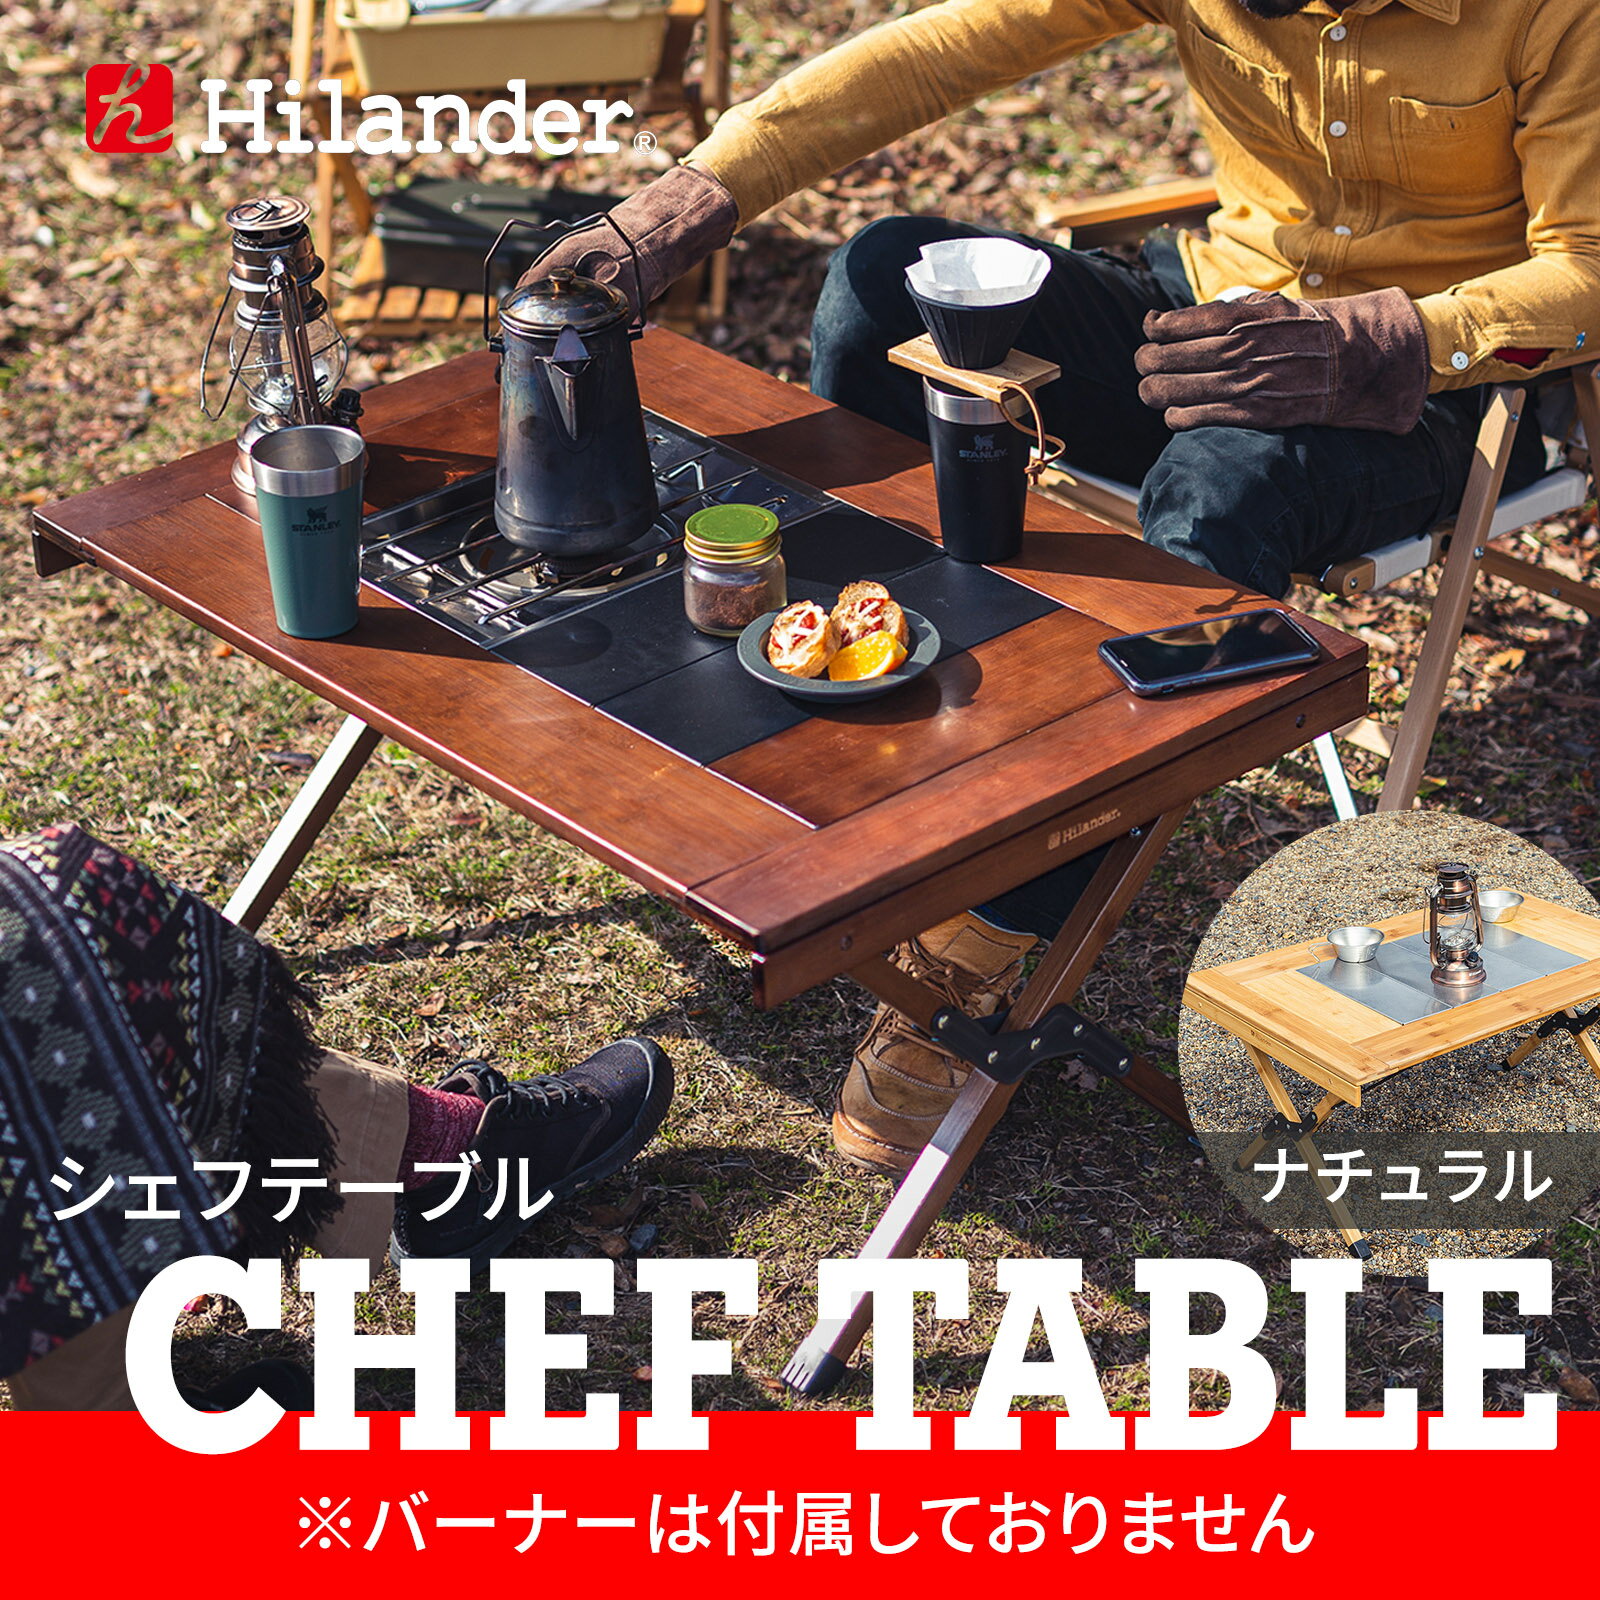 Hilander ハイランダー CHEF TABLE(シェフテーブル) ダークブラウン HCT-029 価格・在庫情報 - キャンプ沼で在庫